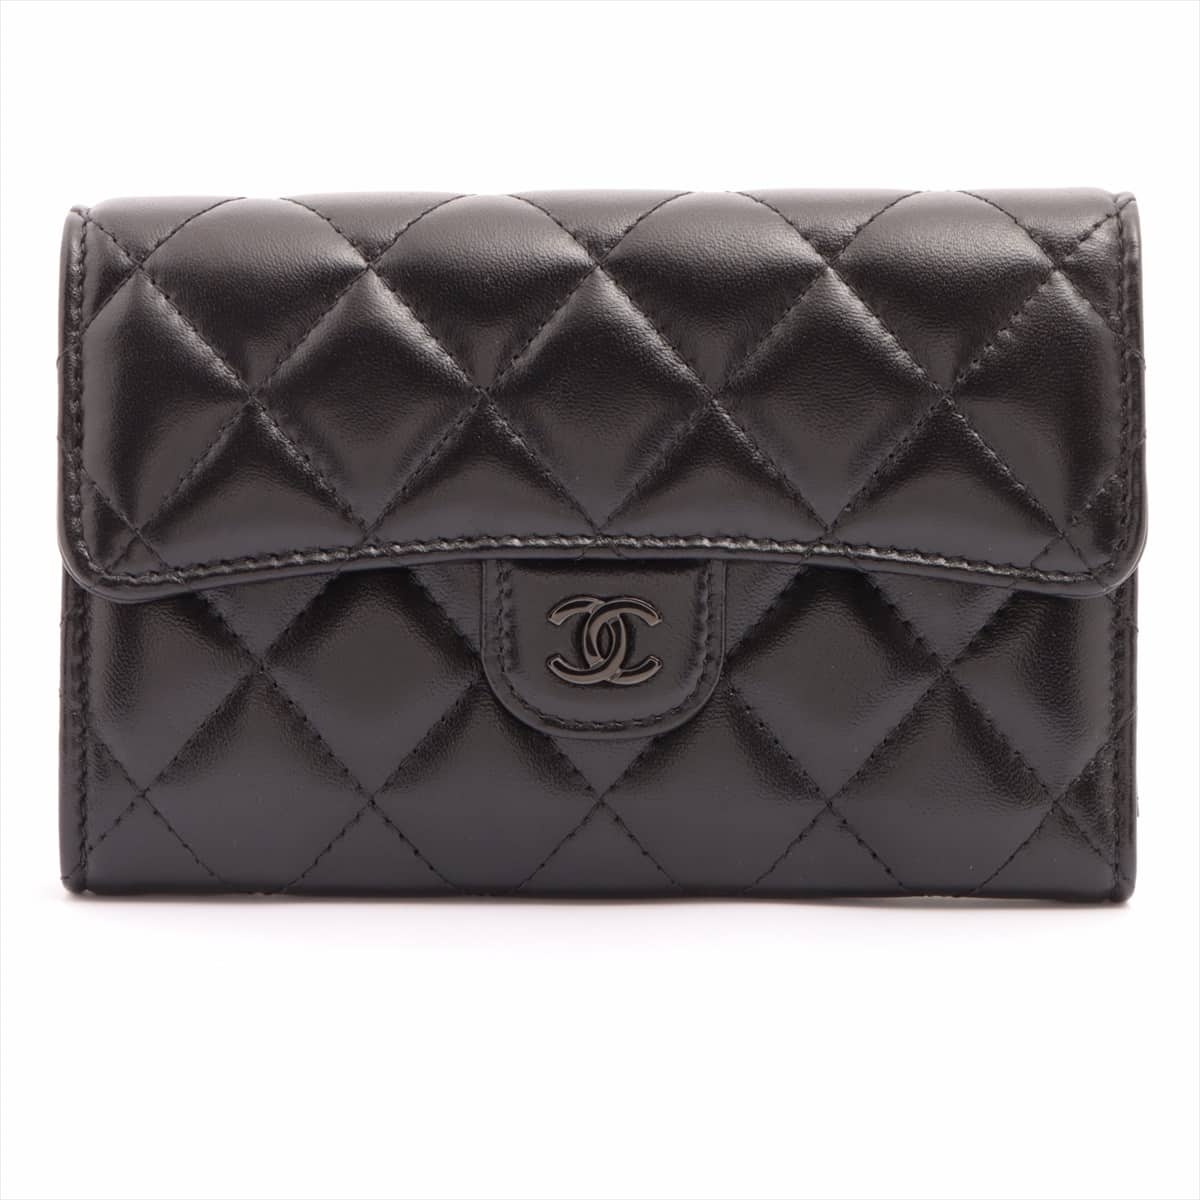 Chanel Matelasse Leather Wallet Black Black hardware 31st